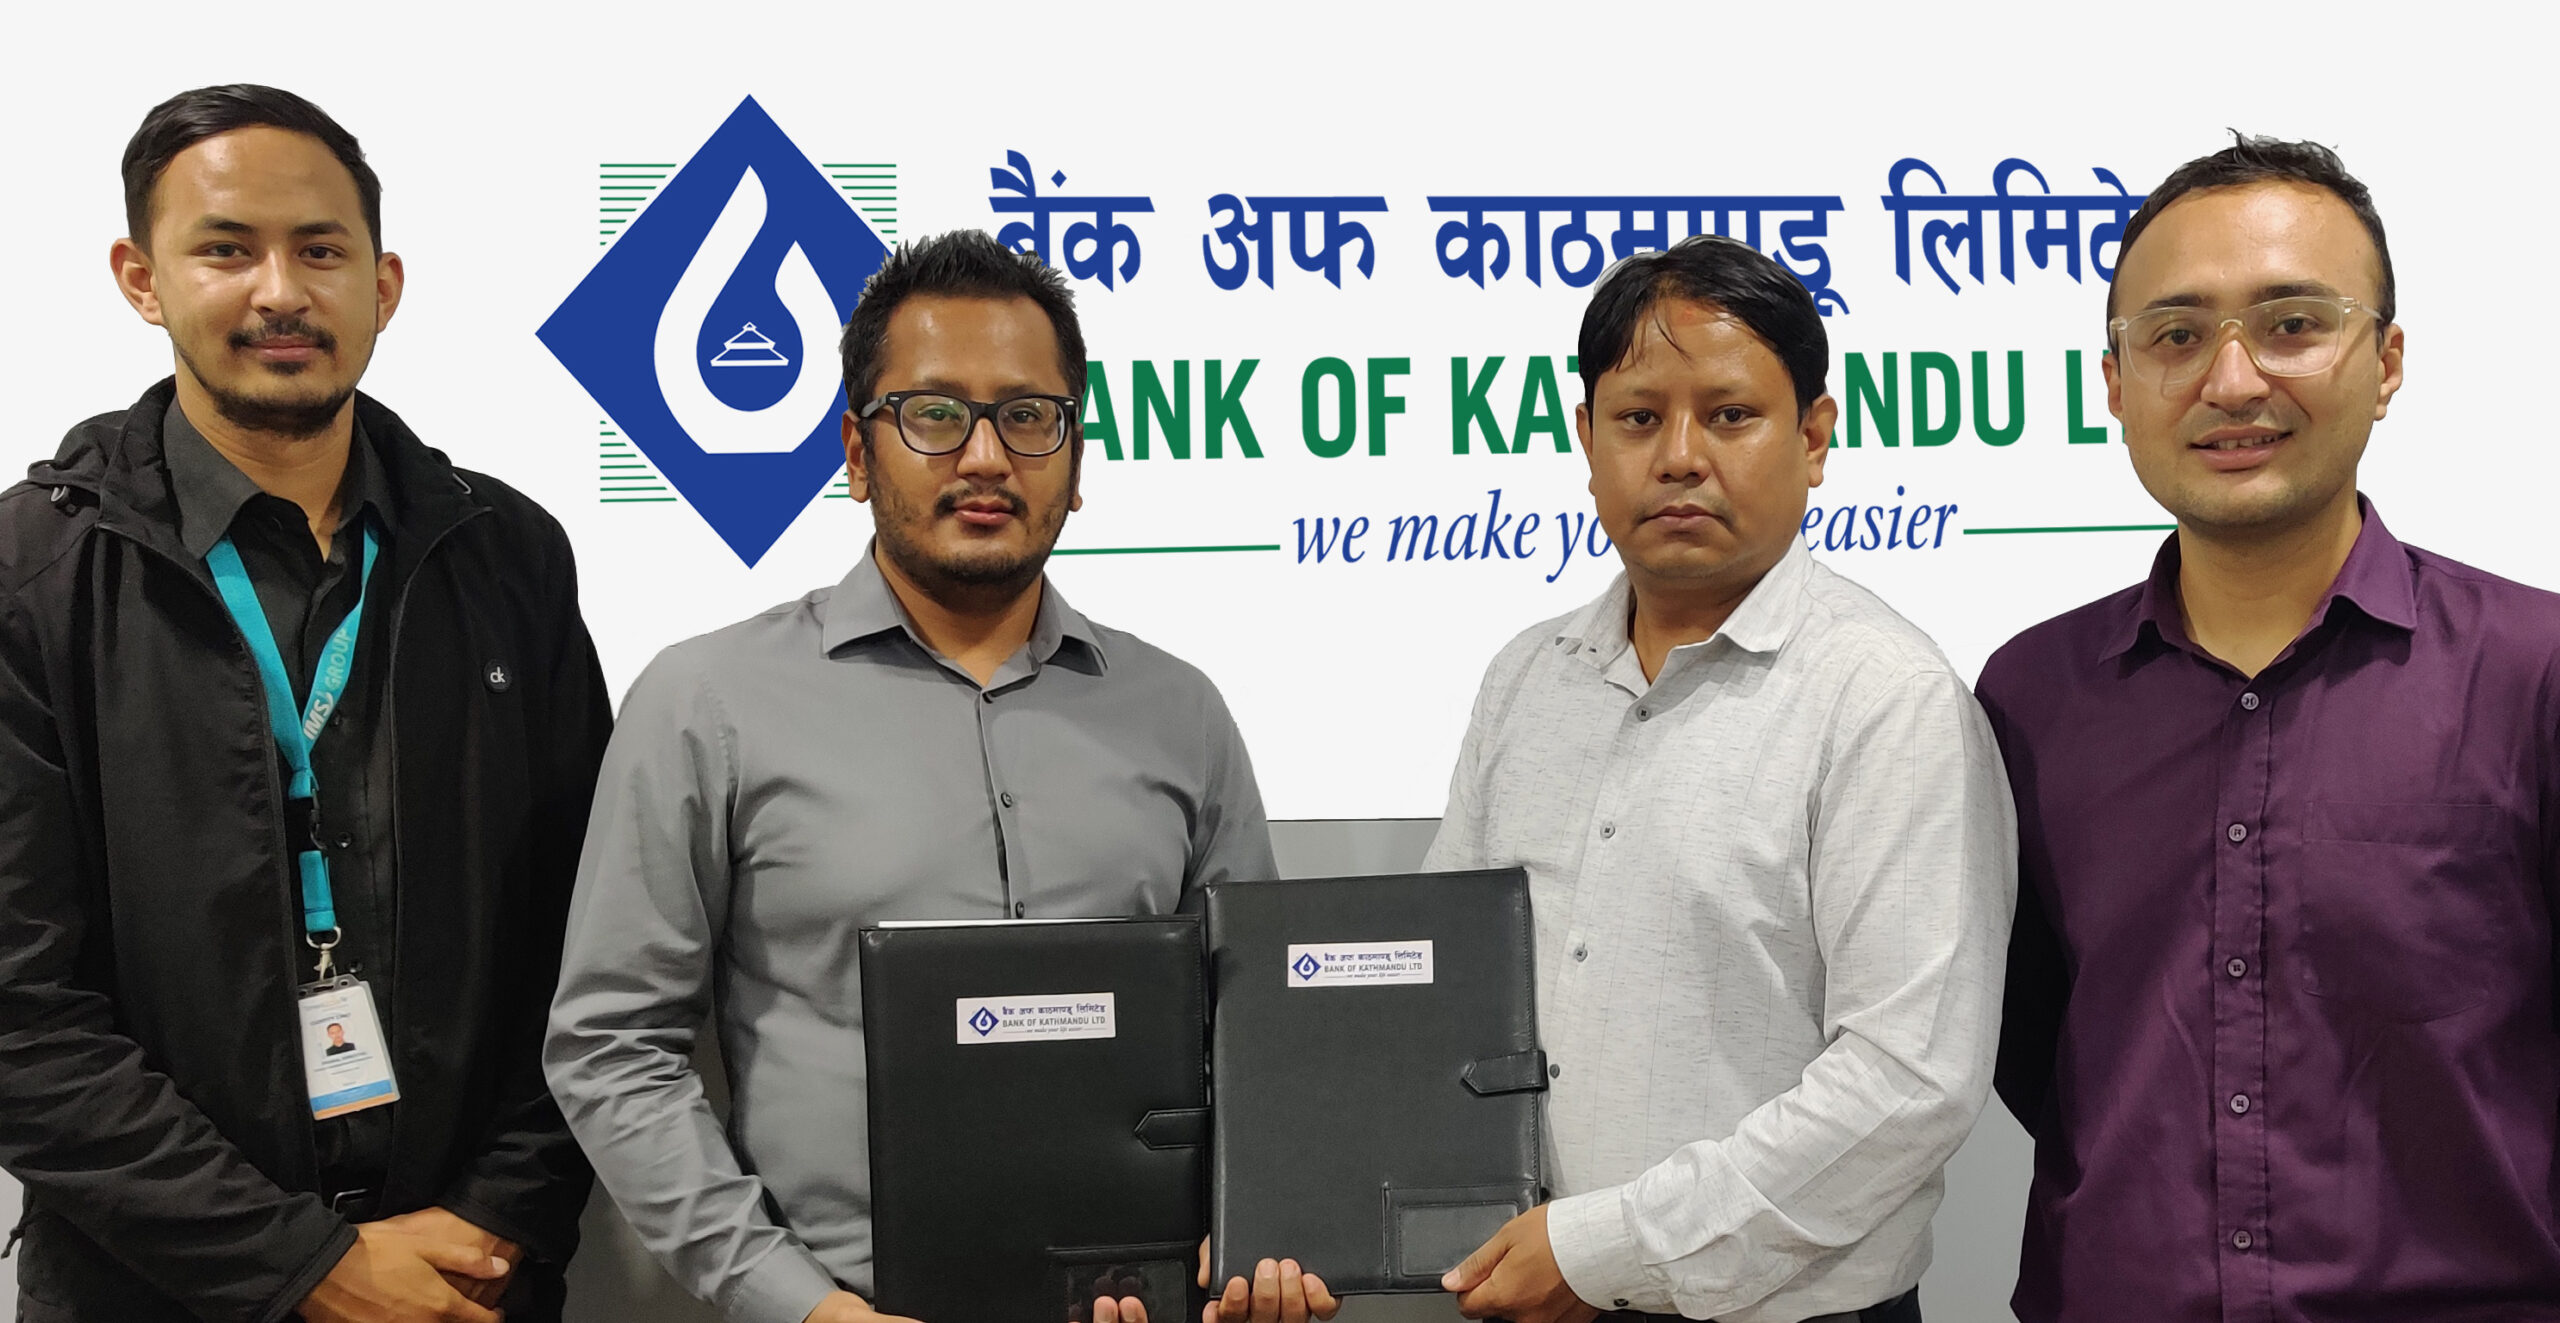 बैंक अफ काठमाण्डूका कार्ड बाहक ग्राहकले स्मार्ट दशैं अफरमा २० प्रतिशतसम्मको नगदफिर्ता पाउने